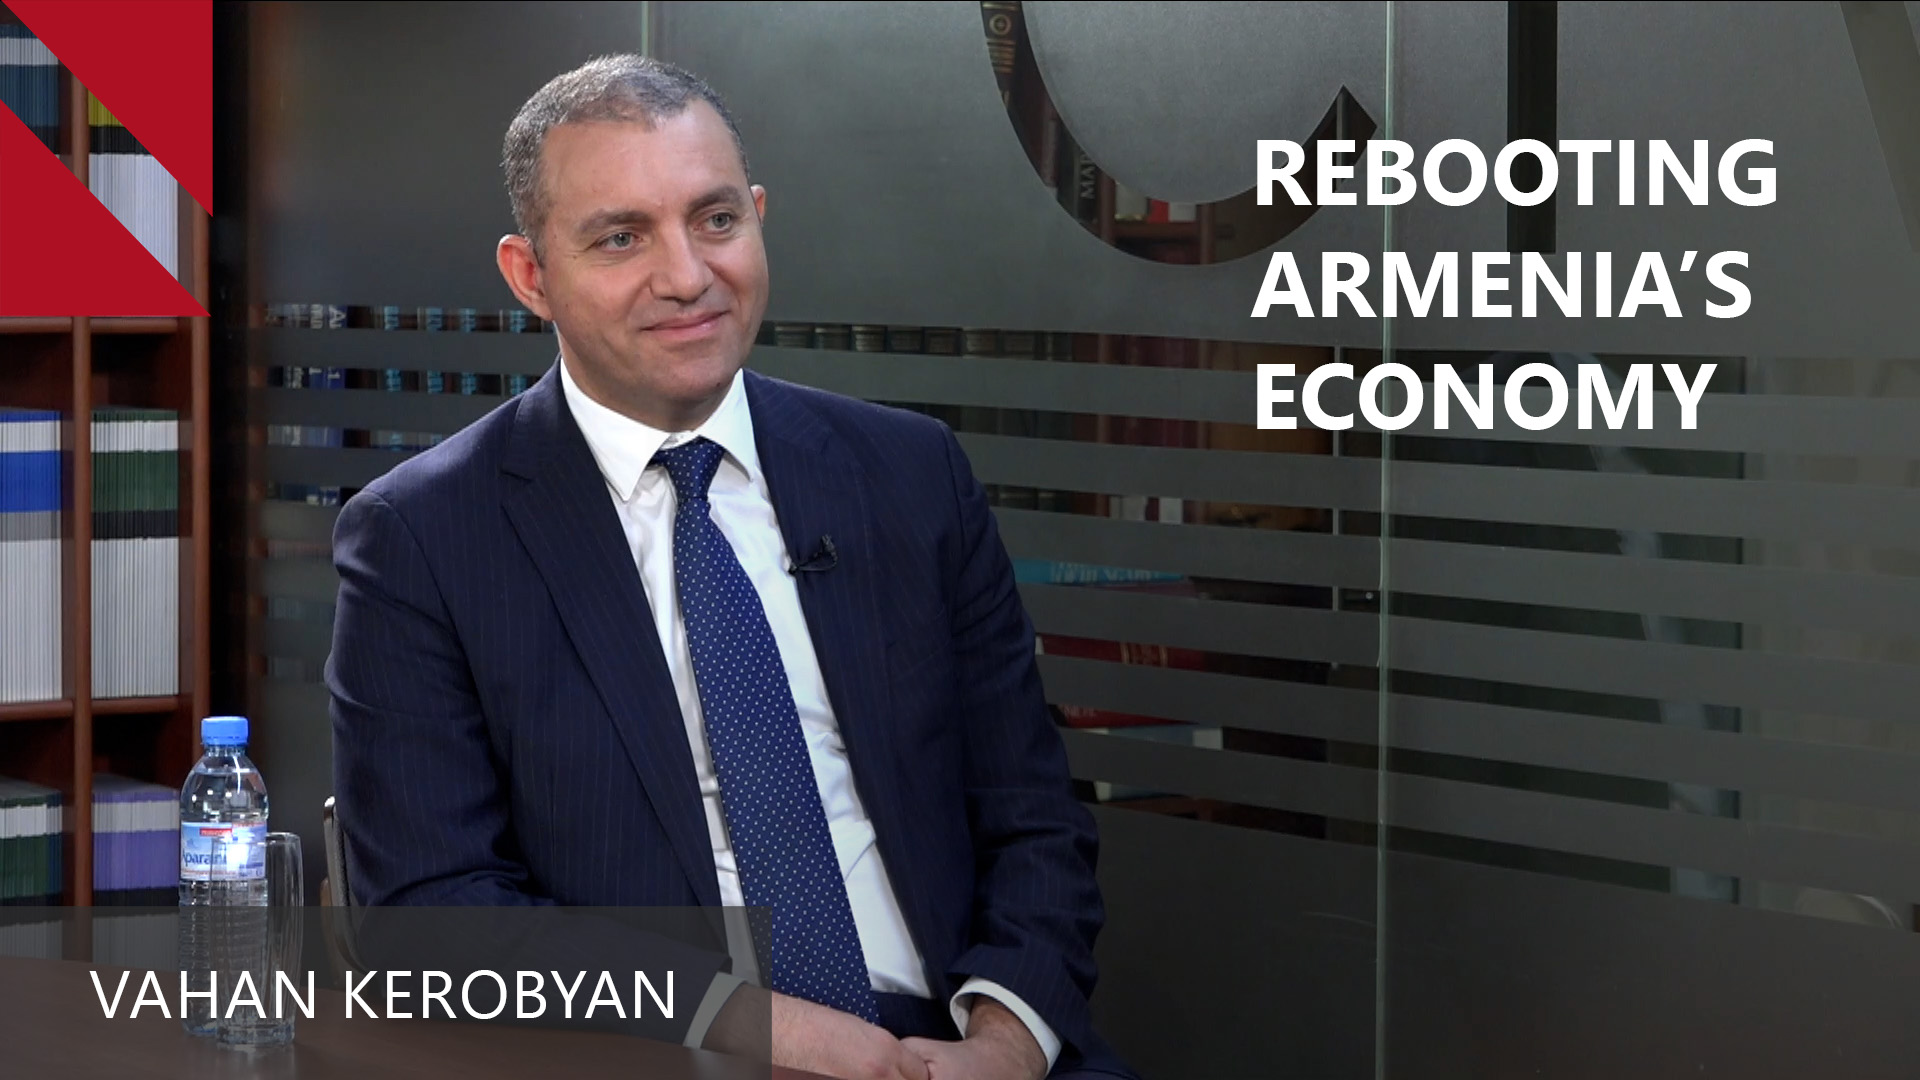 REBOOTING ARMENIA’S ECONOMY